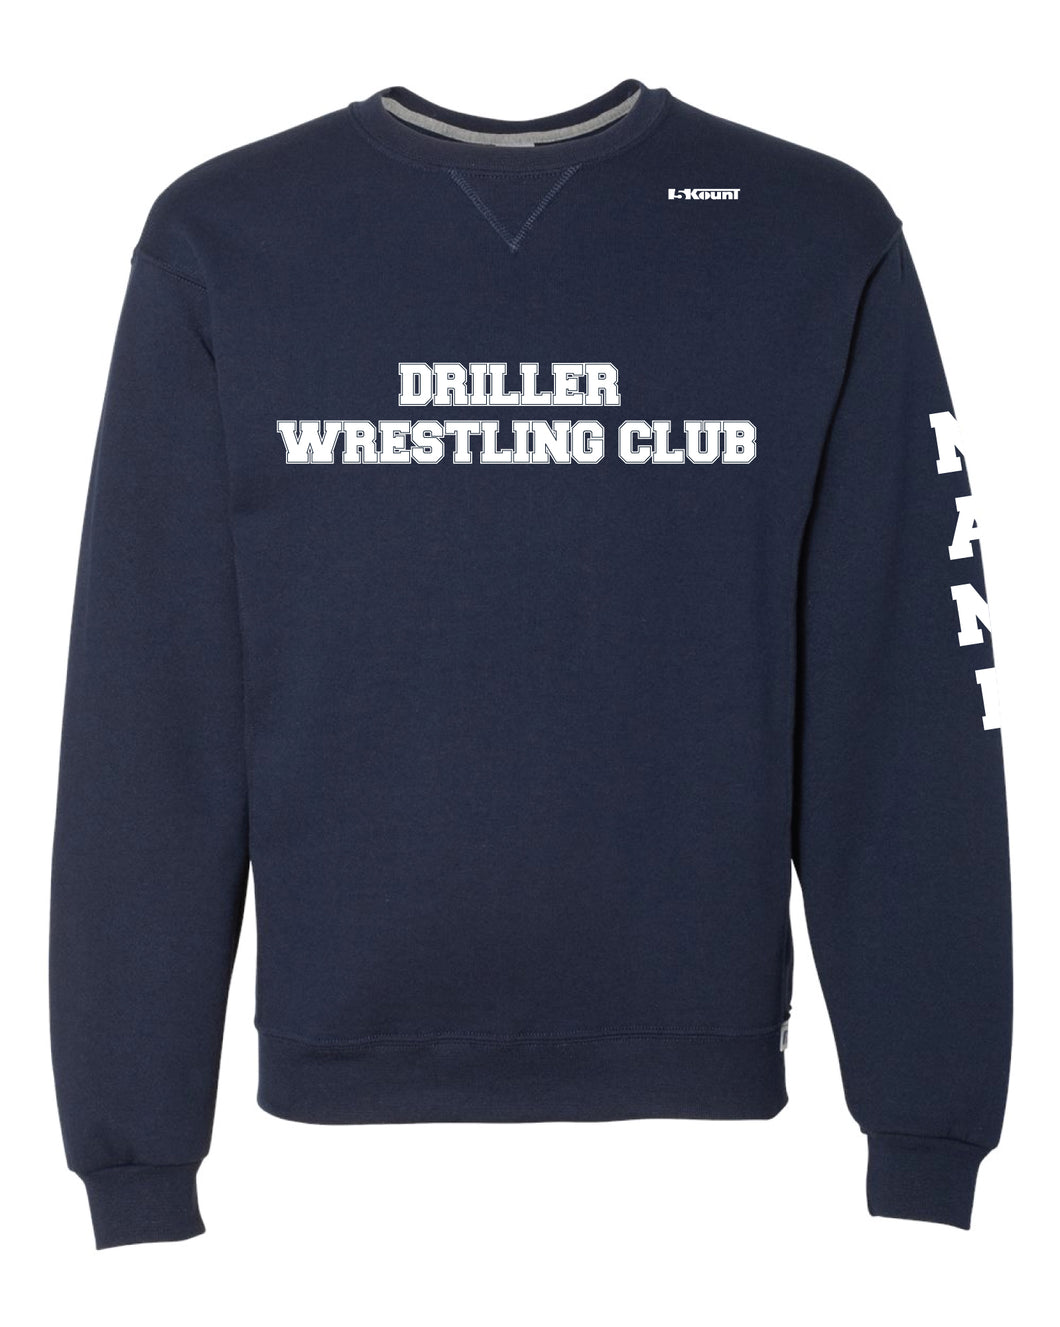 Driller Wrestling Club Cotton Crewneck Sweatshirt - Navy - 5KounT